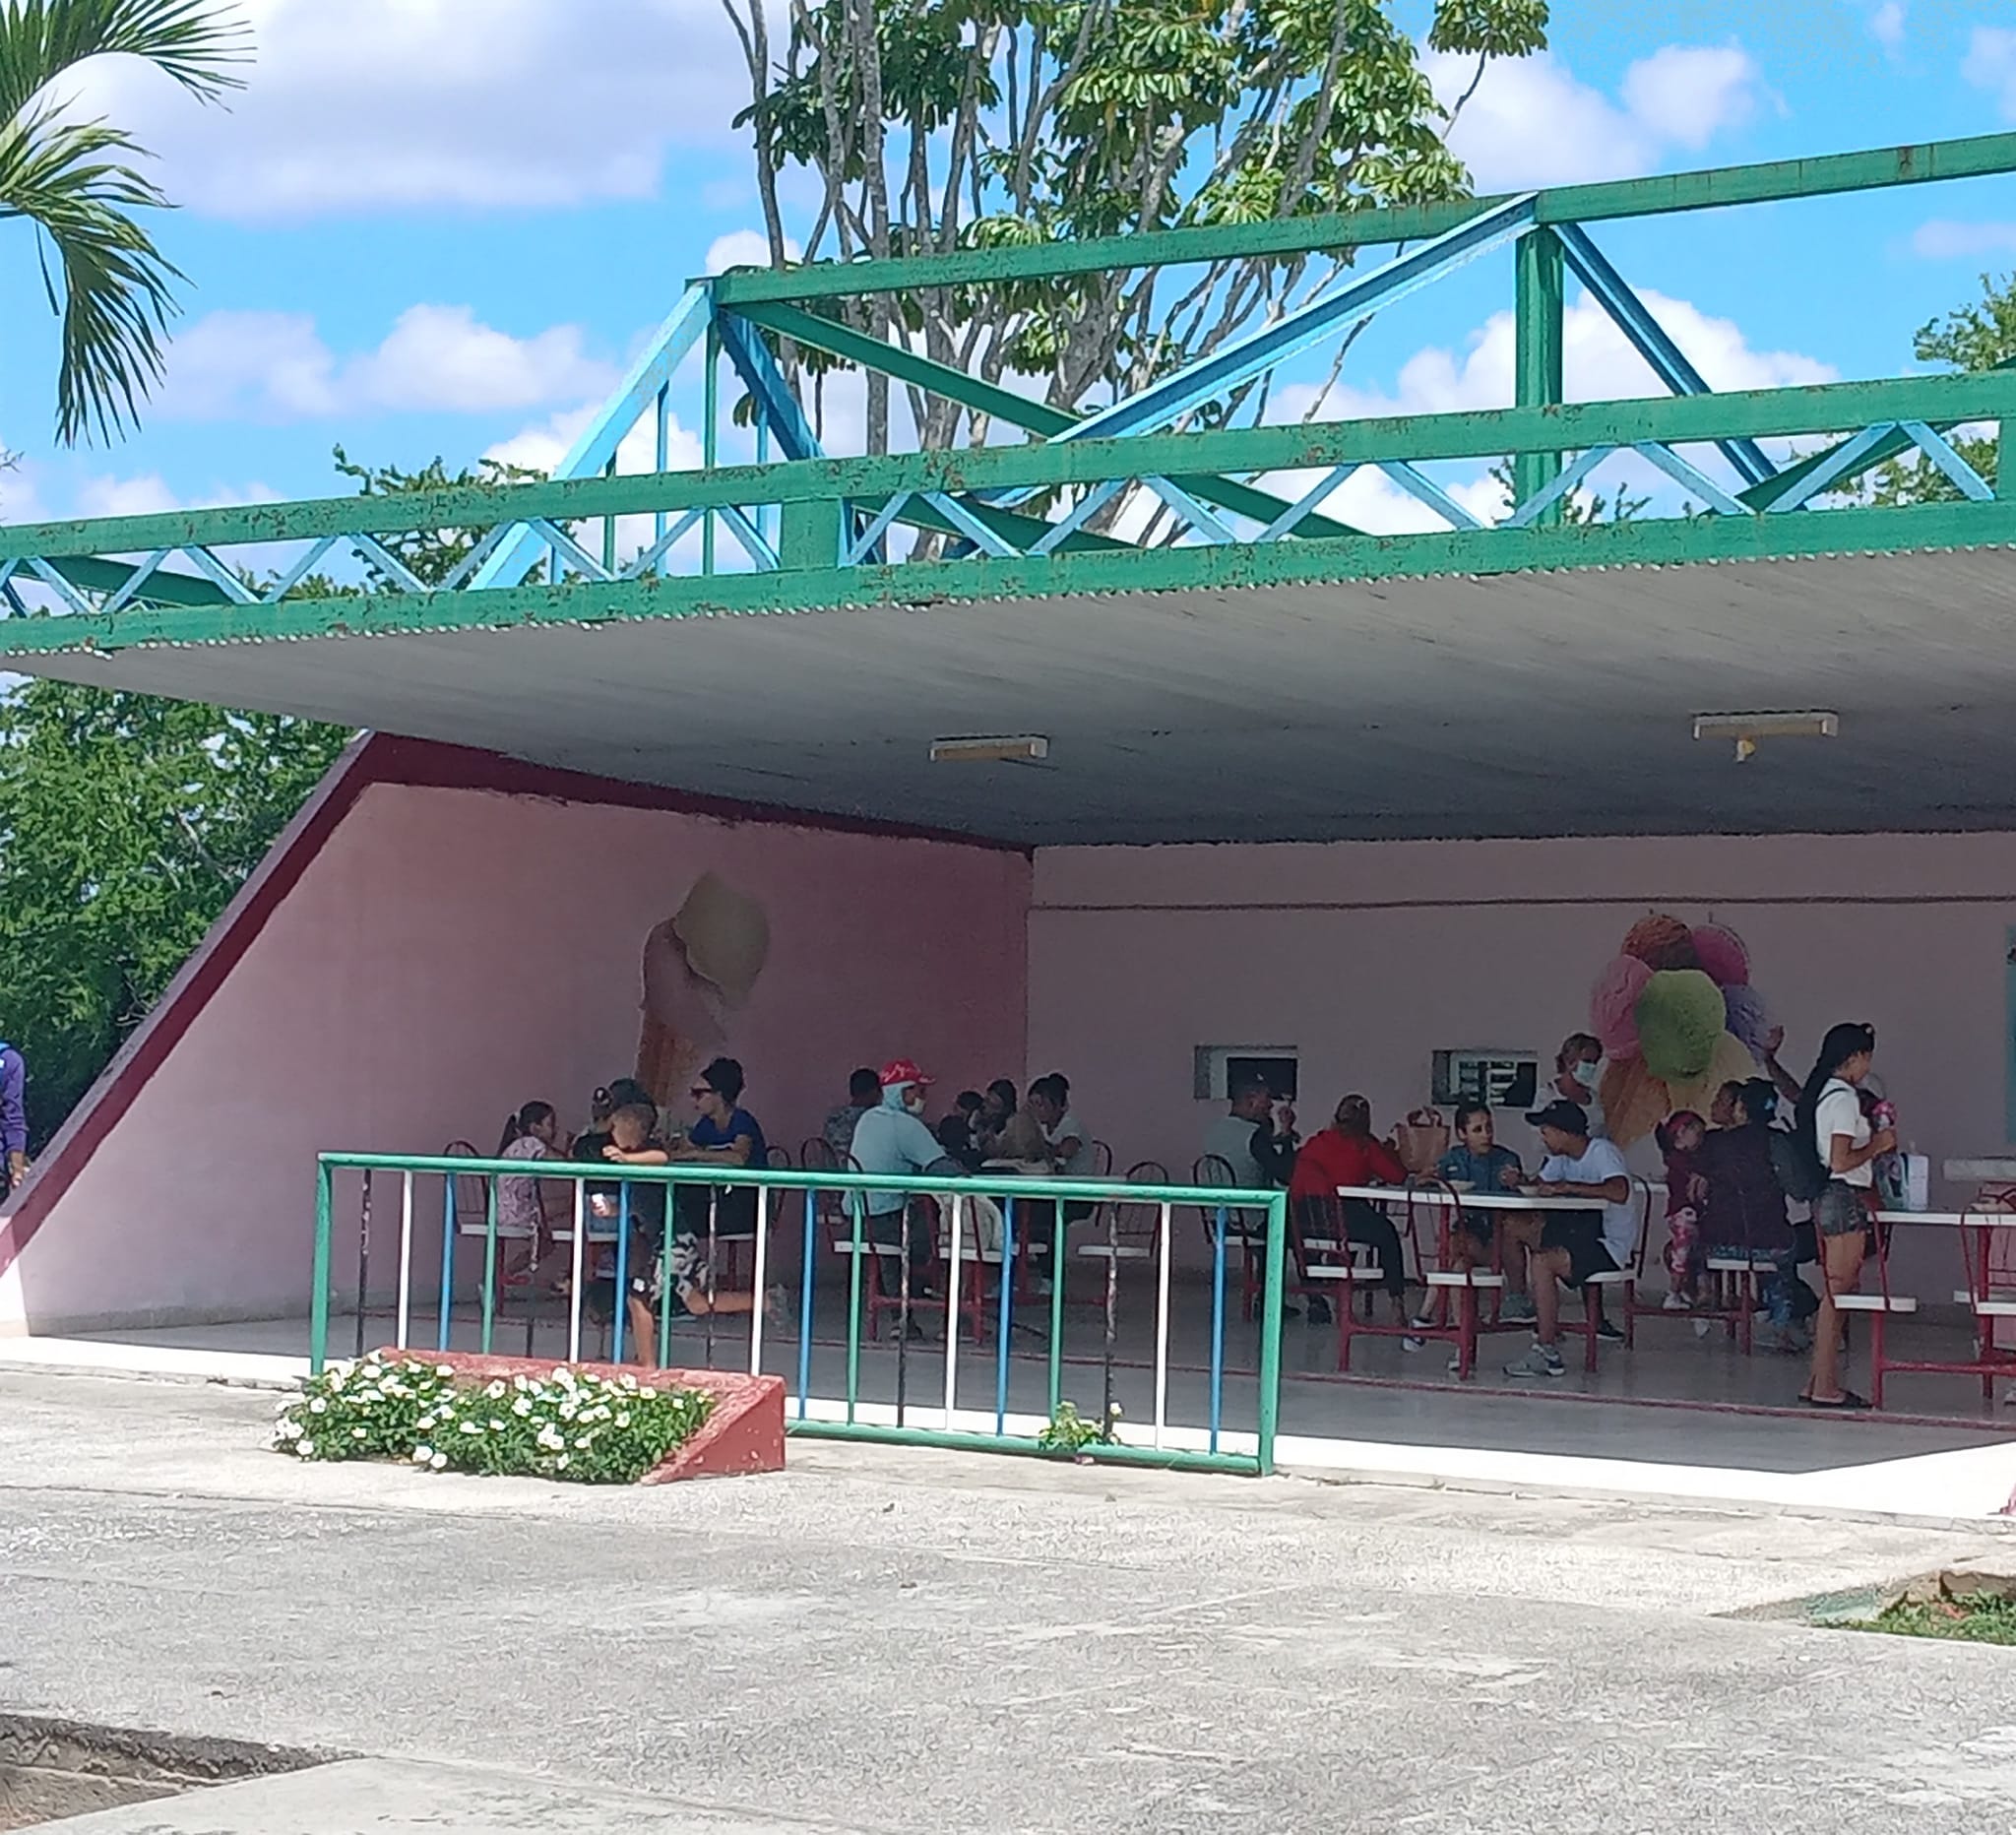 Establecimiento de gastronomía parque infantil José Martí municipio Holguín. Foto: Edenis